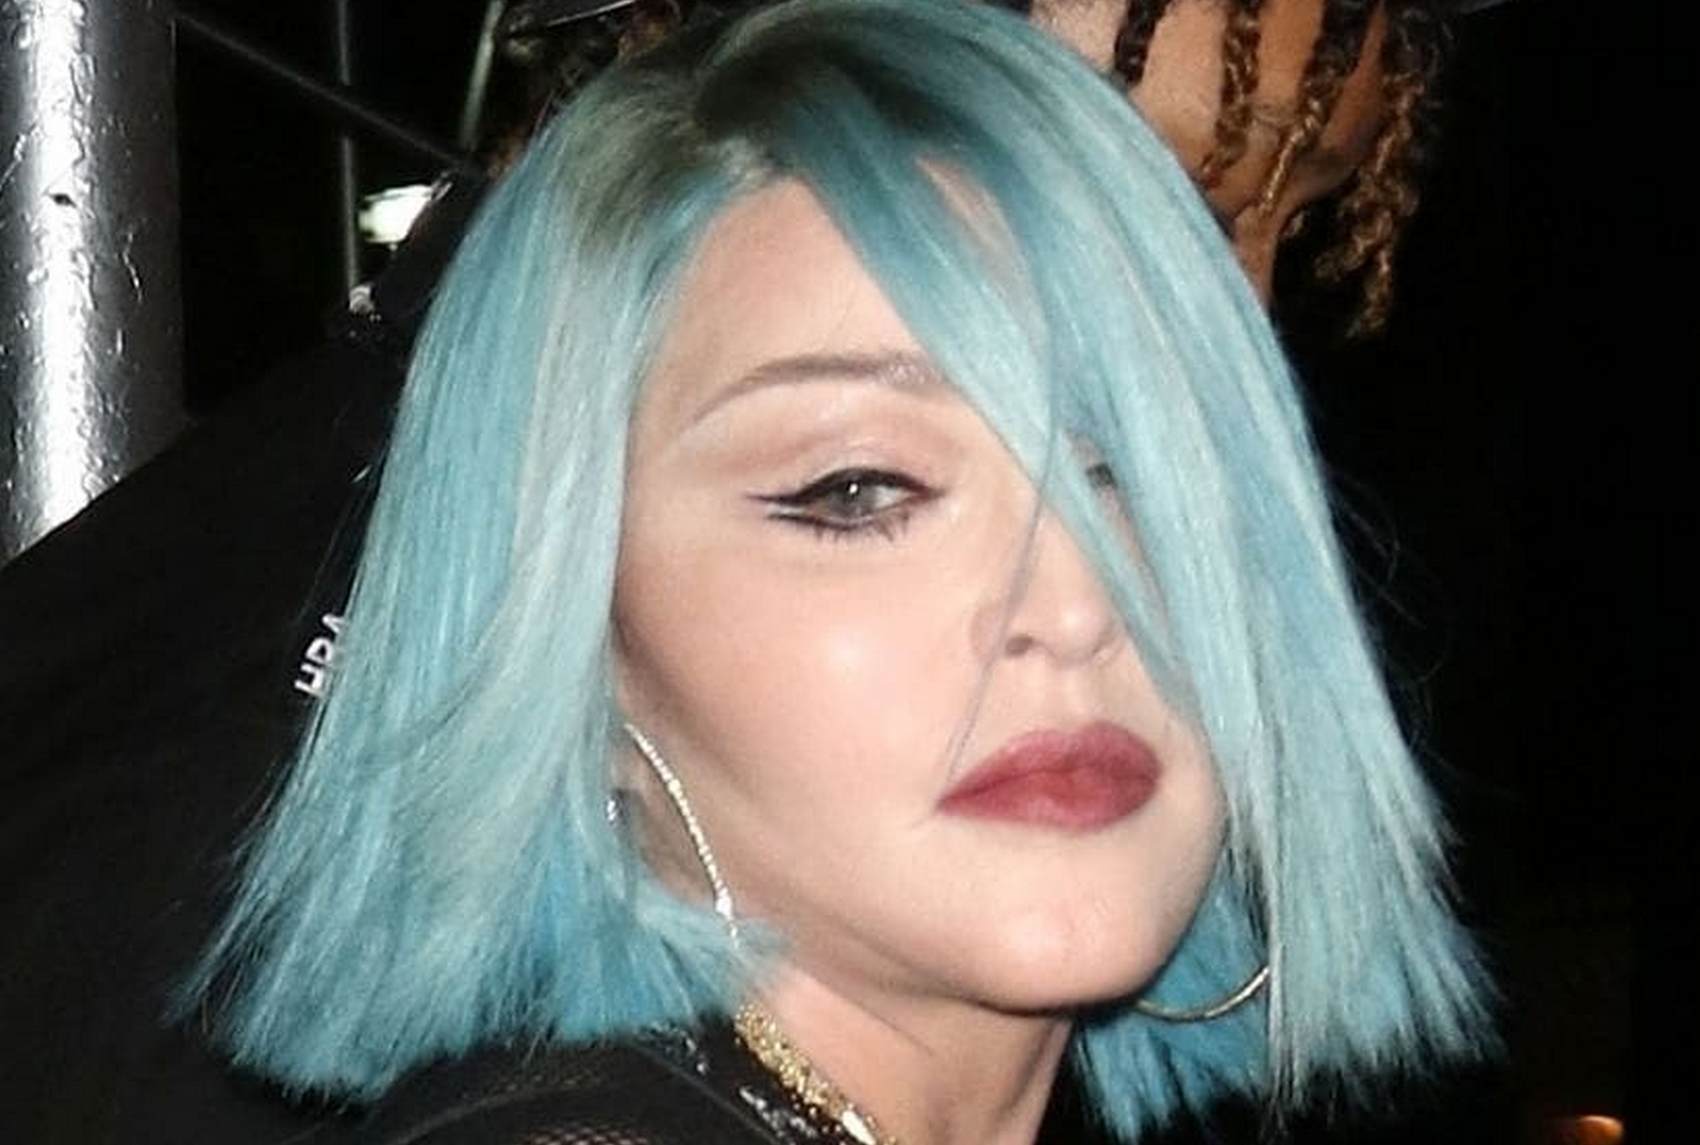 Мадонна выступила с обнажённой грудью на гей-вечеринке (фото, видео 18+)